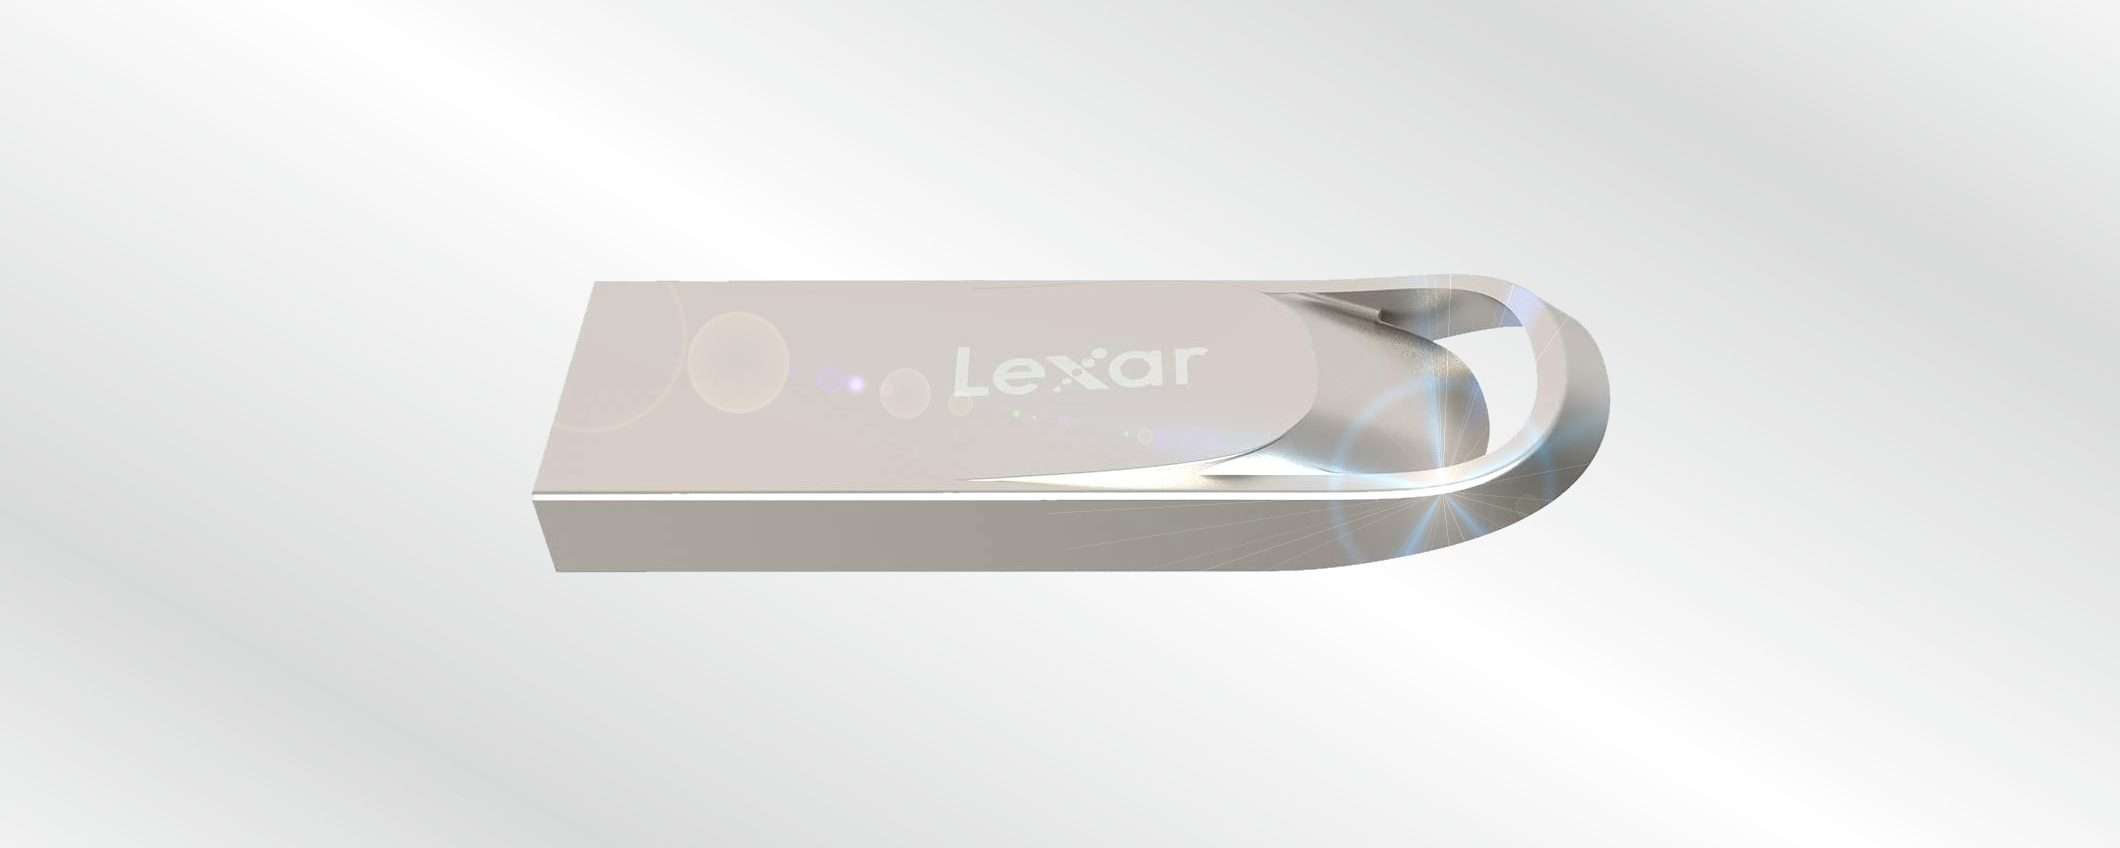 Lexar USB: bella, capiente, resistente, 128GB (-33% su Amazon)